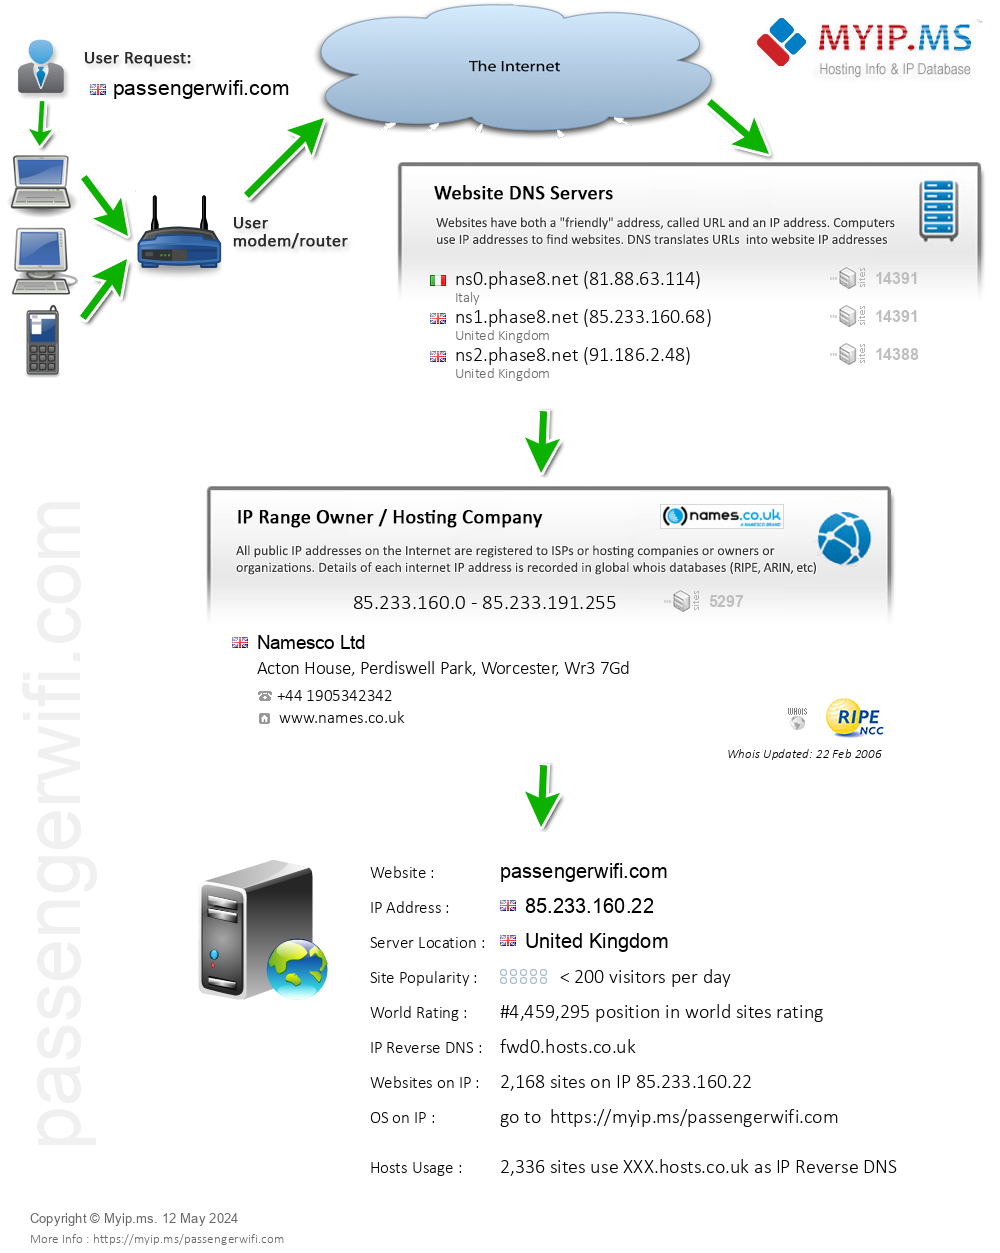 Passengerwifi.com - Website Hosting Visual IP Diagram